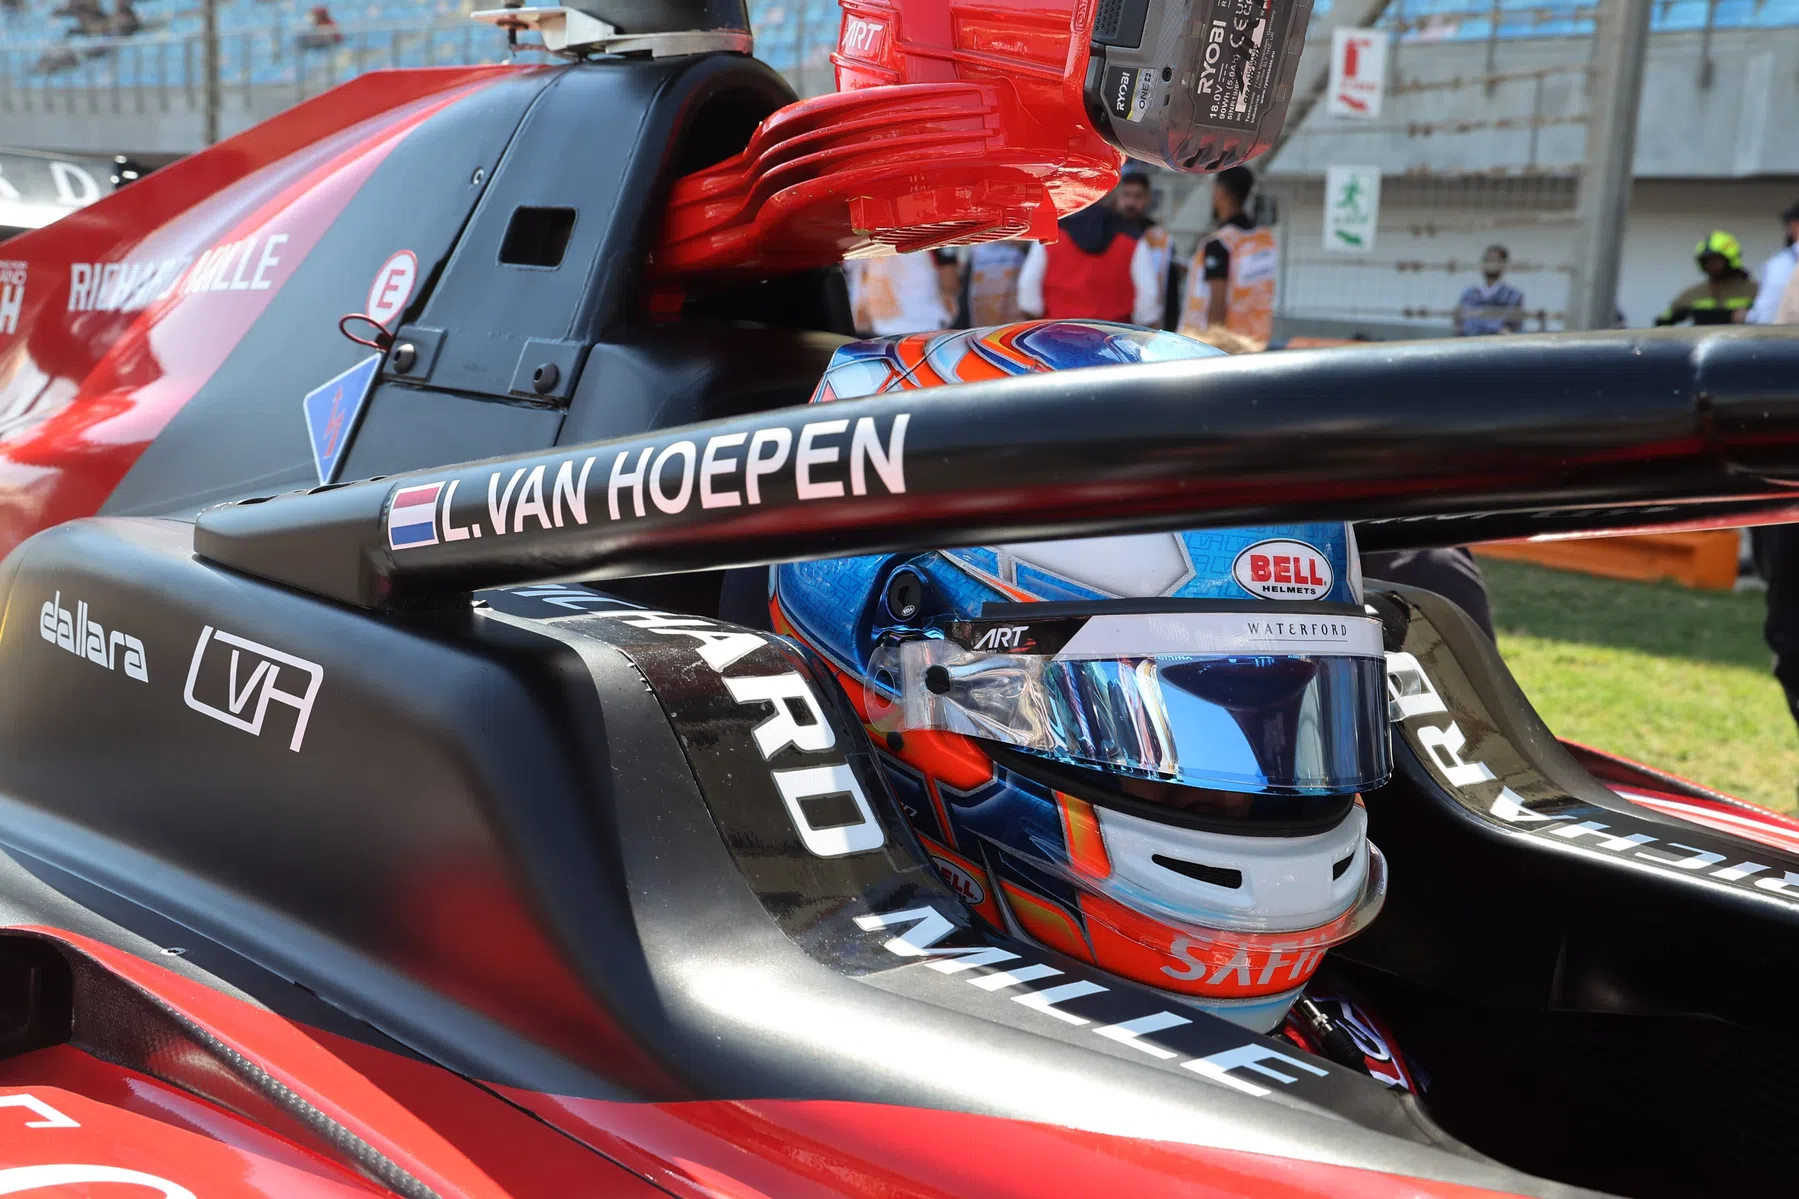 Course de vitesse de Formule 3 au Red Bull Ring avec Van Hoepen